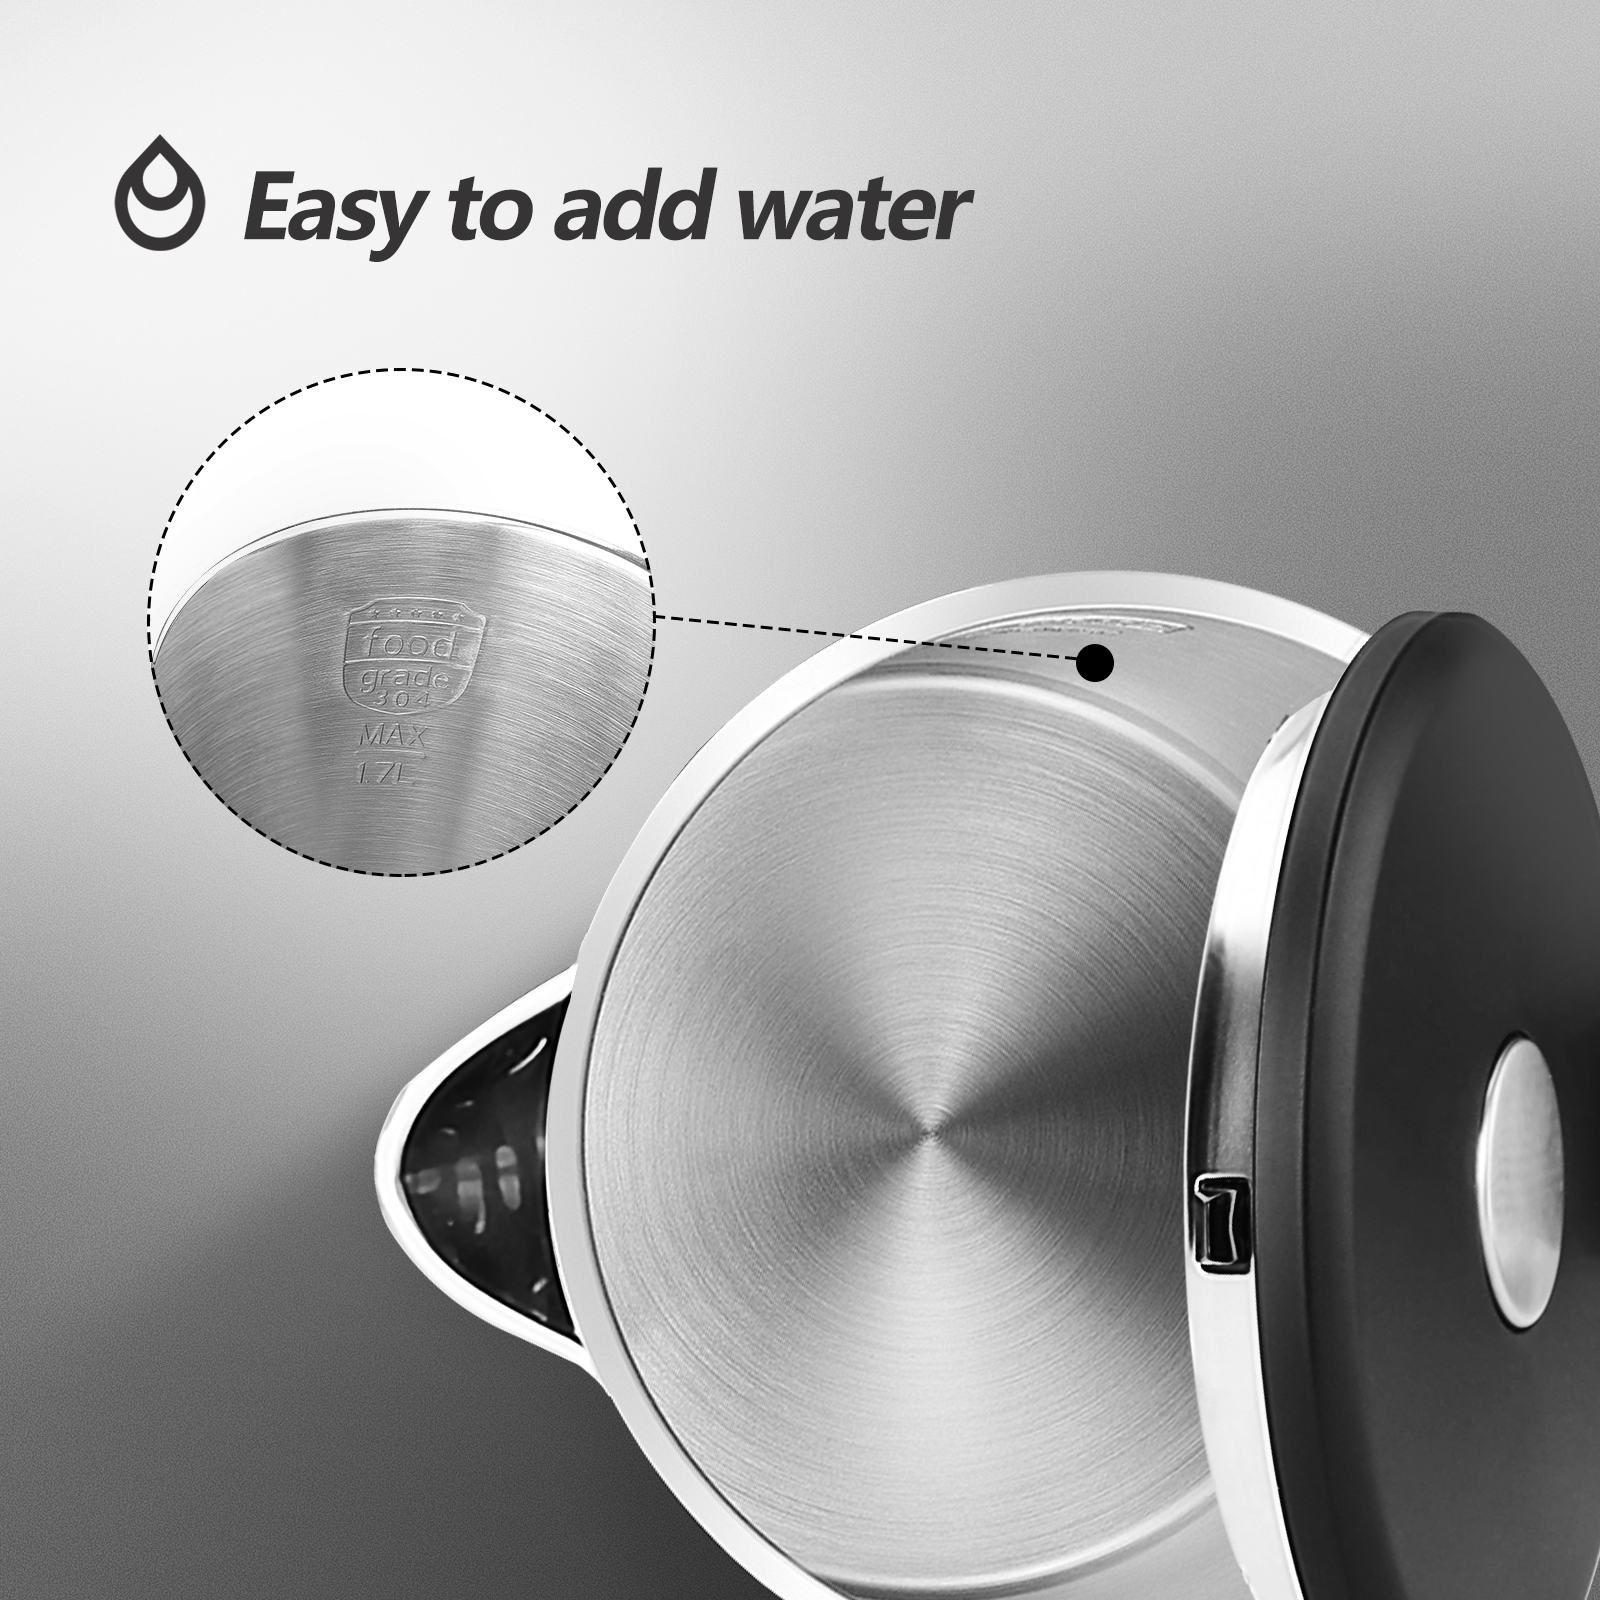 Aigostar Luster - Edelstahl Wasserkocher, 1,7 Liter Doppelwand Design,  Edelstahl Wasserkessel mit Automatischer Abschaltung, 2200W, Überhitzungsschutz, Schnellkochfunktion, BPA frei, leise, schwarz (213718)